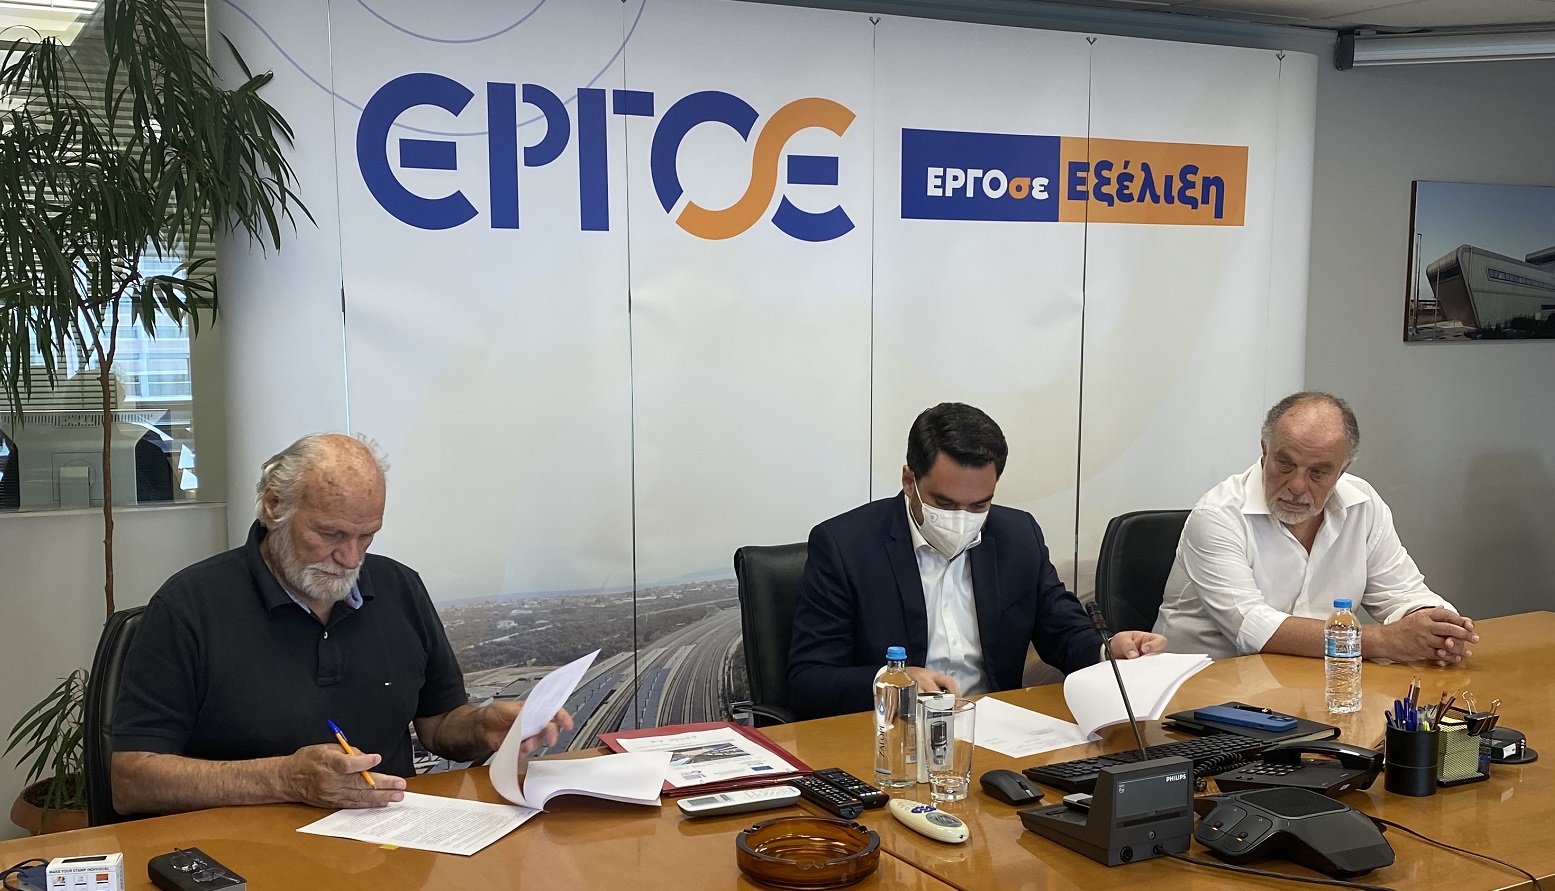 ΕΡΓΟΣΕ: Υπεγράφη η σύμβαση για τη Β΄ φάση ανάπτυξης του Κεντρικού Σιδηροδρομικού Σταθμού Αθηνών